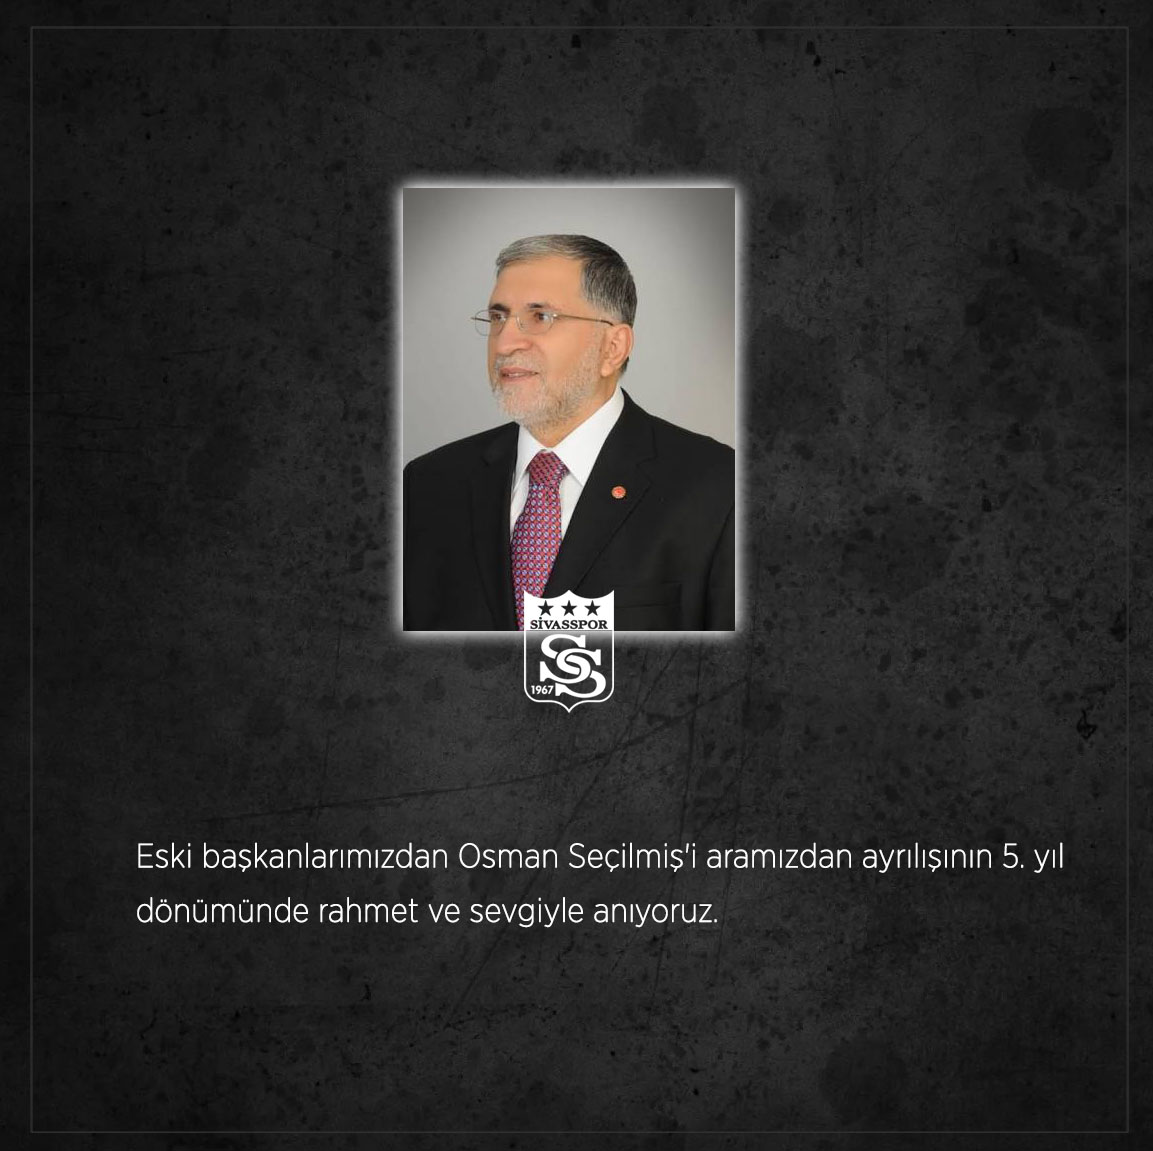 Eski başkanlarımızdan Osman Seçilmiş'i aramızdan ayrılışının 5. yıl dönümünde rahmet ve sevgiyle anıyoruz.